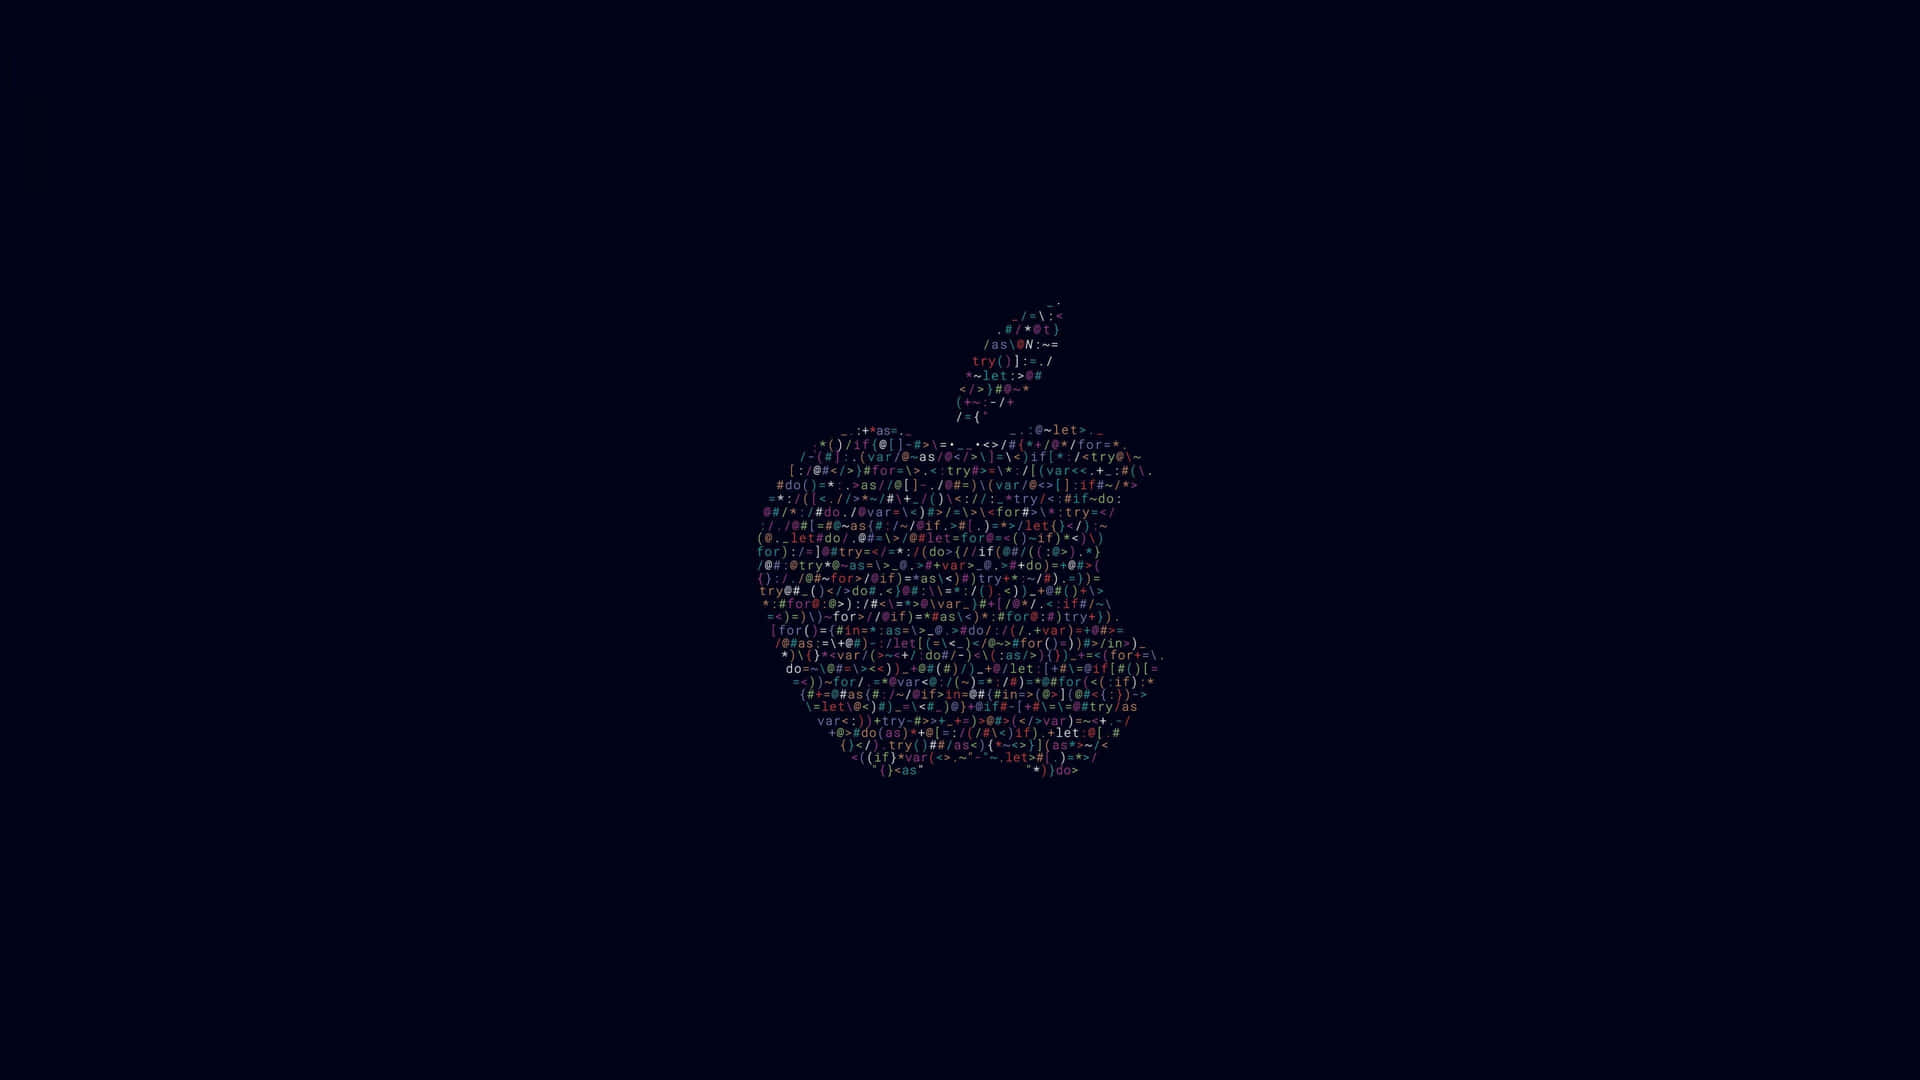 Logoda Apple Em 3840 X 2160 Plano De Fundo.